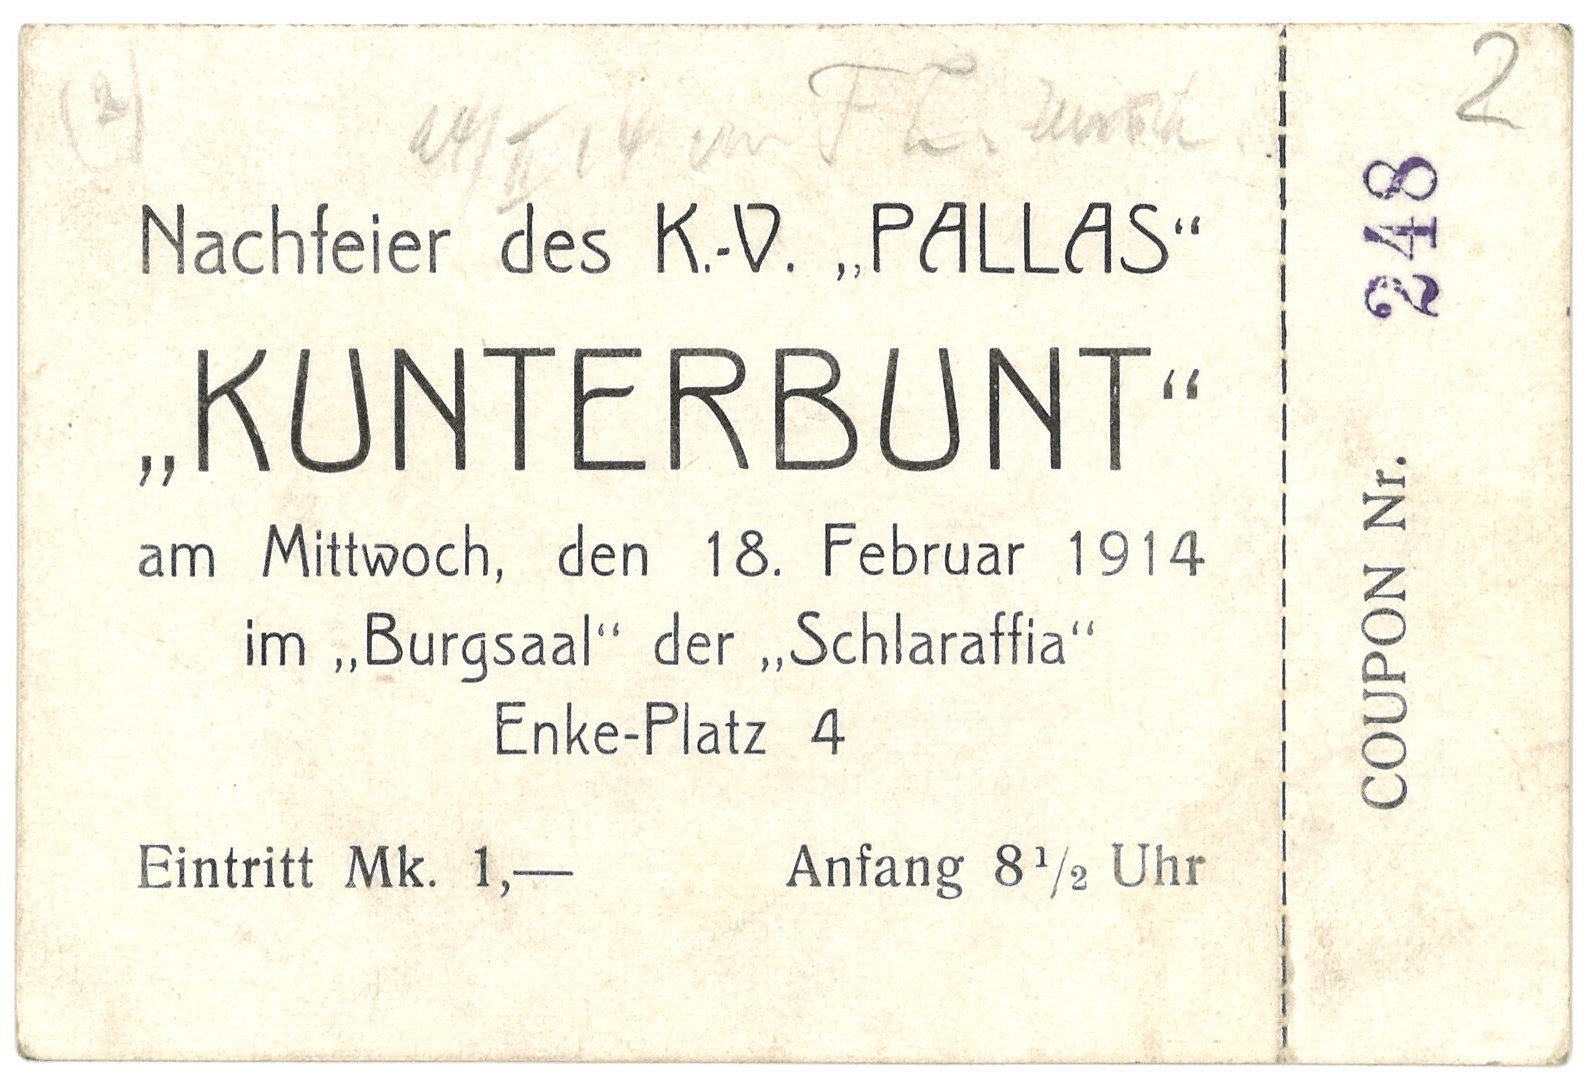 Eintrittskarte zur Nachfeier des Künstlervereins "Pallas" in Berlin 1914 (Landesgeschichtliche Vereinigung für die Mark Brandenburg e.V., Archiv CC BY)